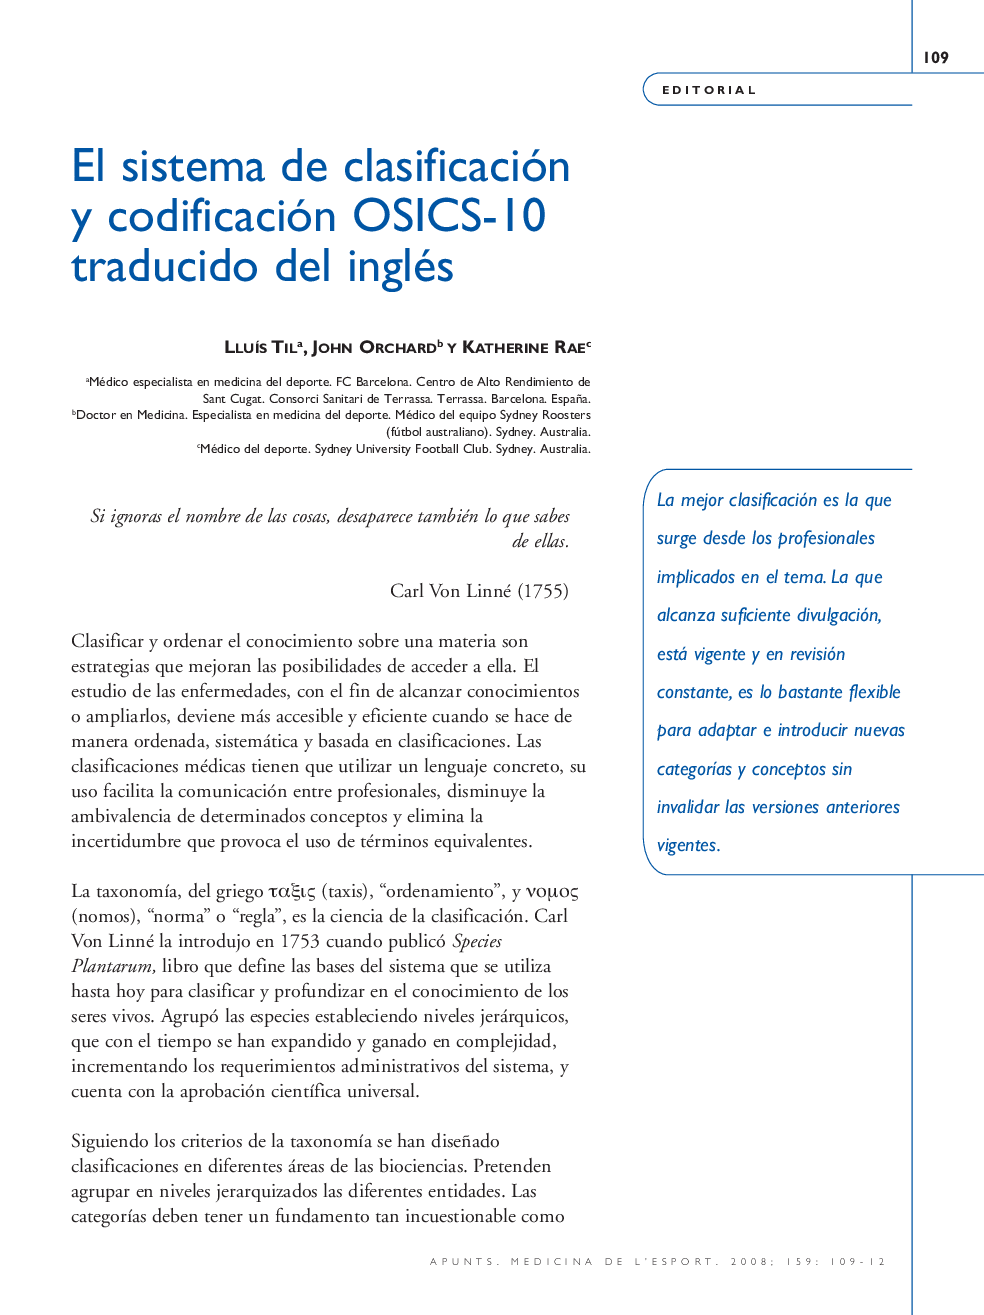 El sistema de clasificación y codificación OSICS-10 traducido del inglés